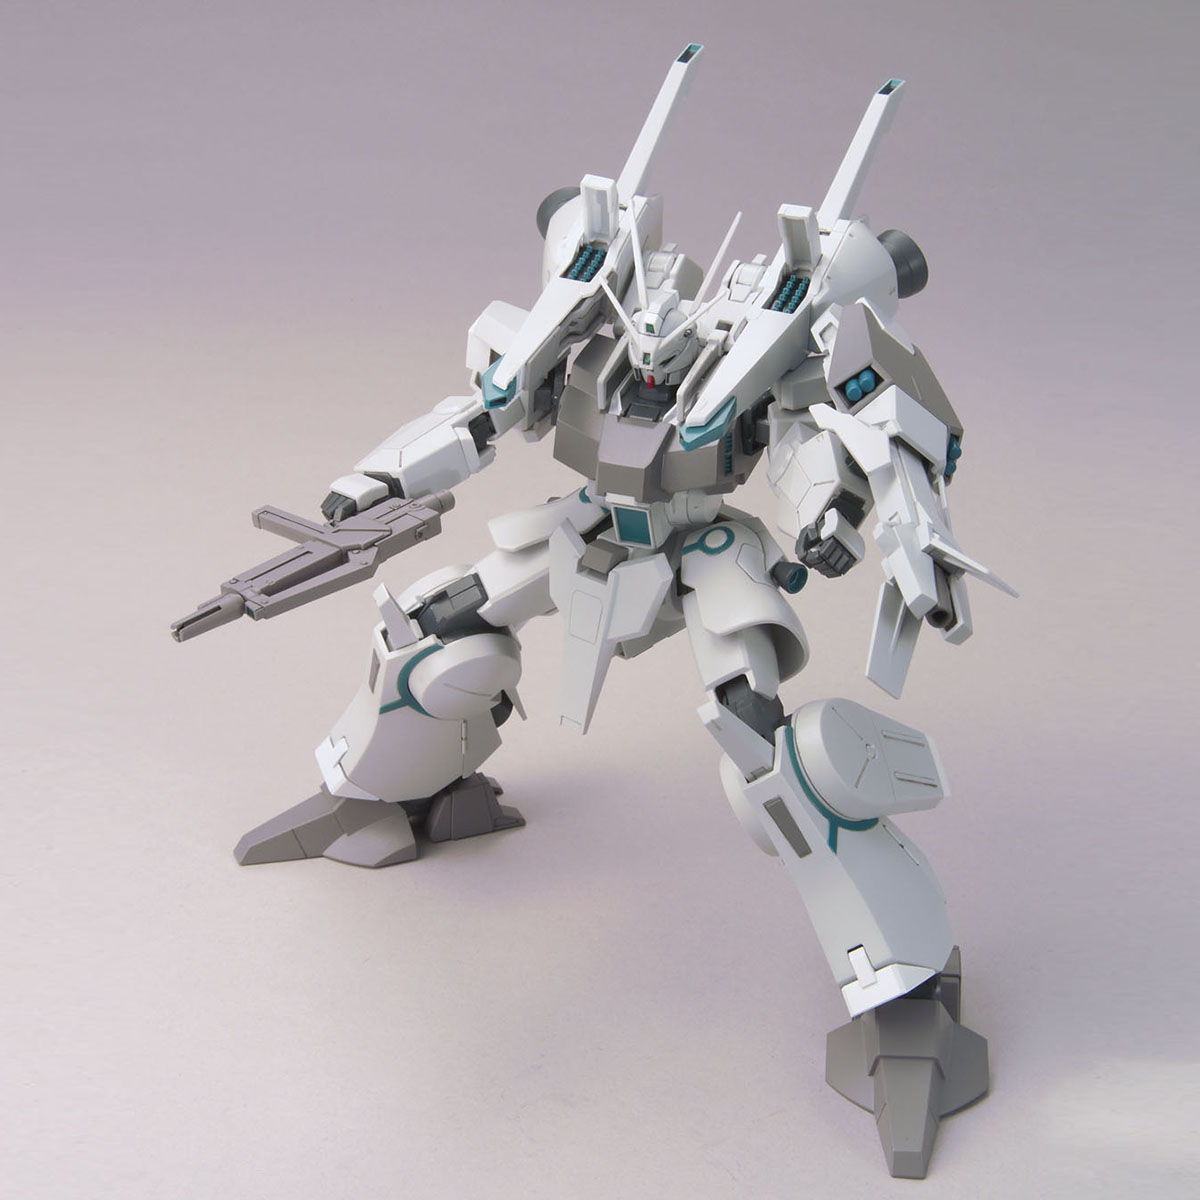 HG ARX-014 Silver Bullet 1/144